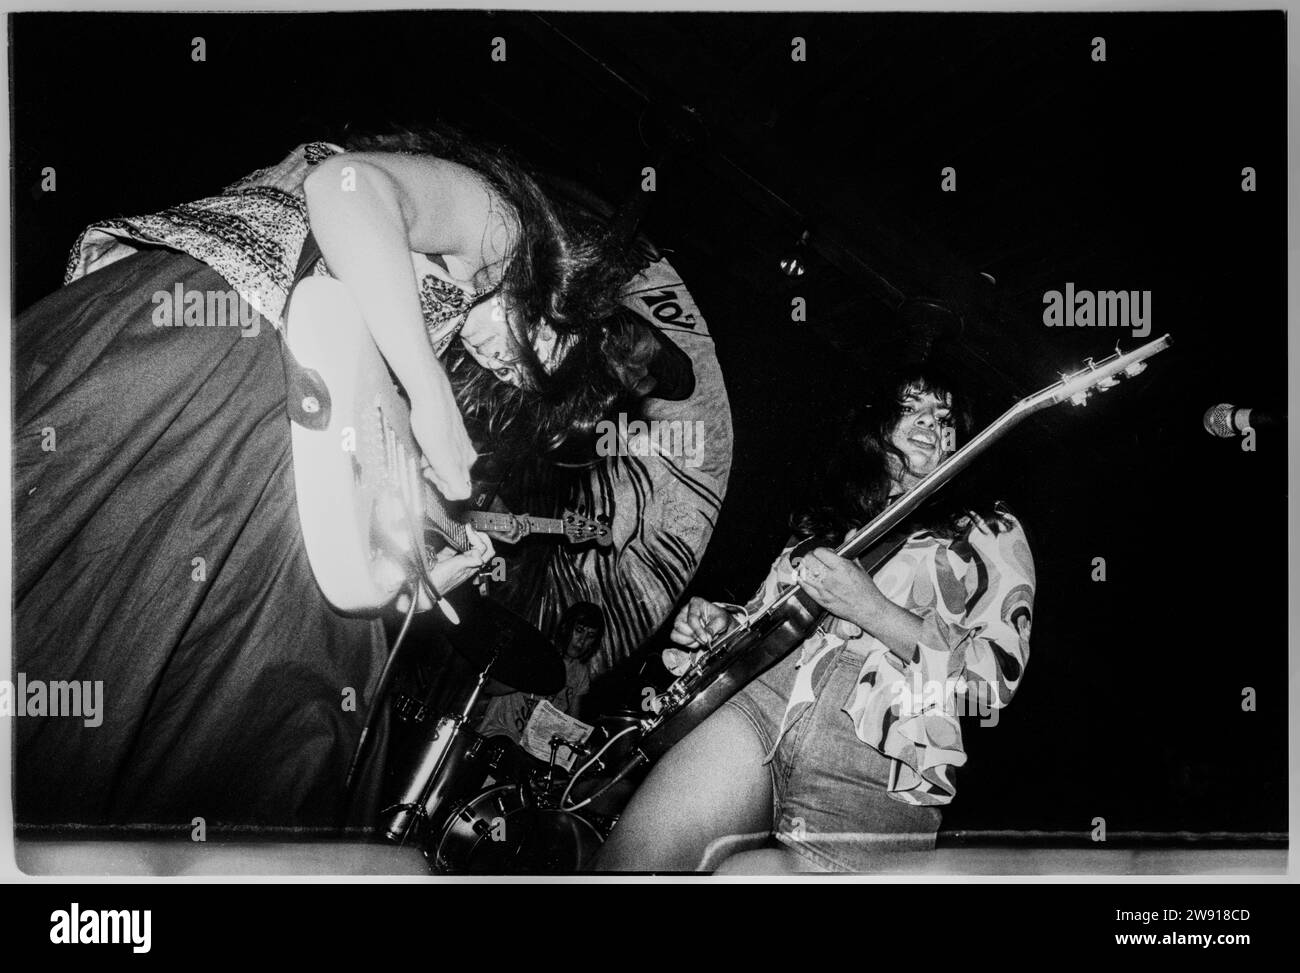 VOODOO QUEENS, BRISTOL FLEECE, 1993: El cantante y guitarrista Anjali Bhatia de The Voodoo Queens tocan Bristol Fleece y Firkin en Bristol, Inglaterra, Reino Unido el 28 de julio de 1993. Foto: Rob Watkins. INFORMACIÓN DE LA BANDA: The Voodoo Queens, una banda británica de indie punk formada a principios de los 90, fue dirigida por Anjali Bhatia. Su música enérgica y feminista, incluyendo el riotous single 'Supermodel-superficial', trajo una mezcla única de punk y pop, convirtiéndolos en una presencia notable en la escena de música alternativa de Riot Grrrl. Foto de stock